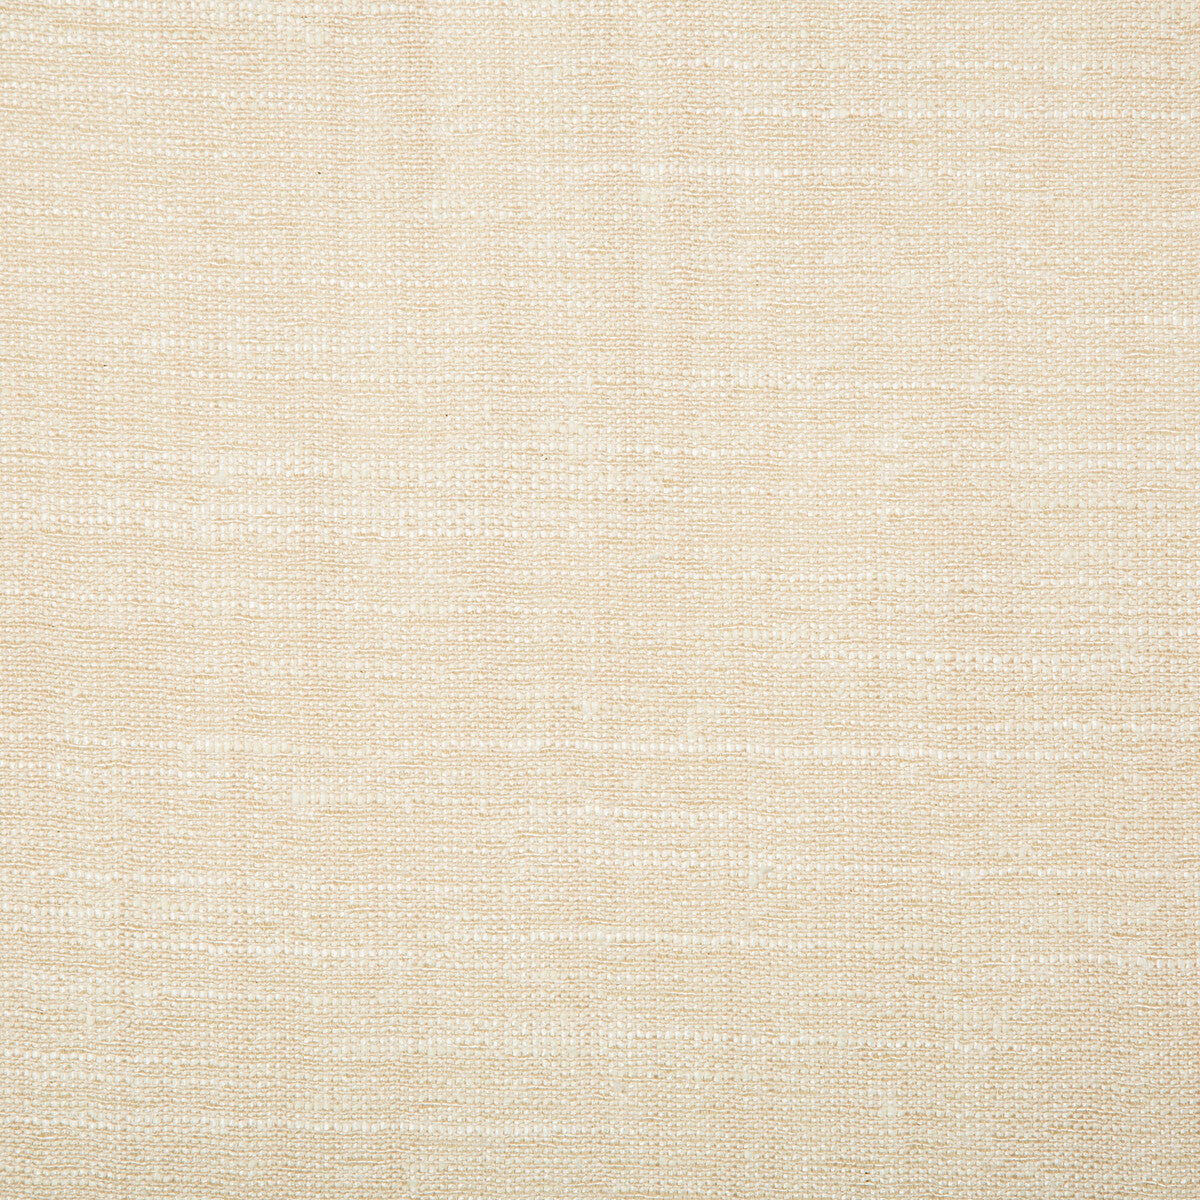 Kravet Basics fabric in 4664-1 color - pattern 4664.1.0 - by Kravet Basics